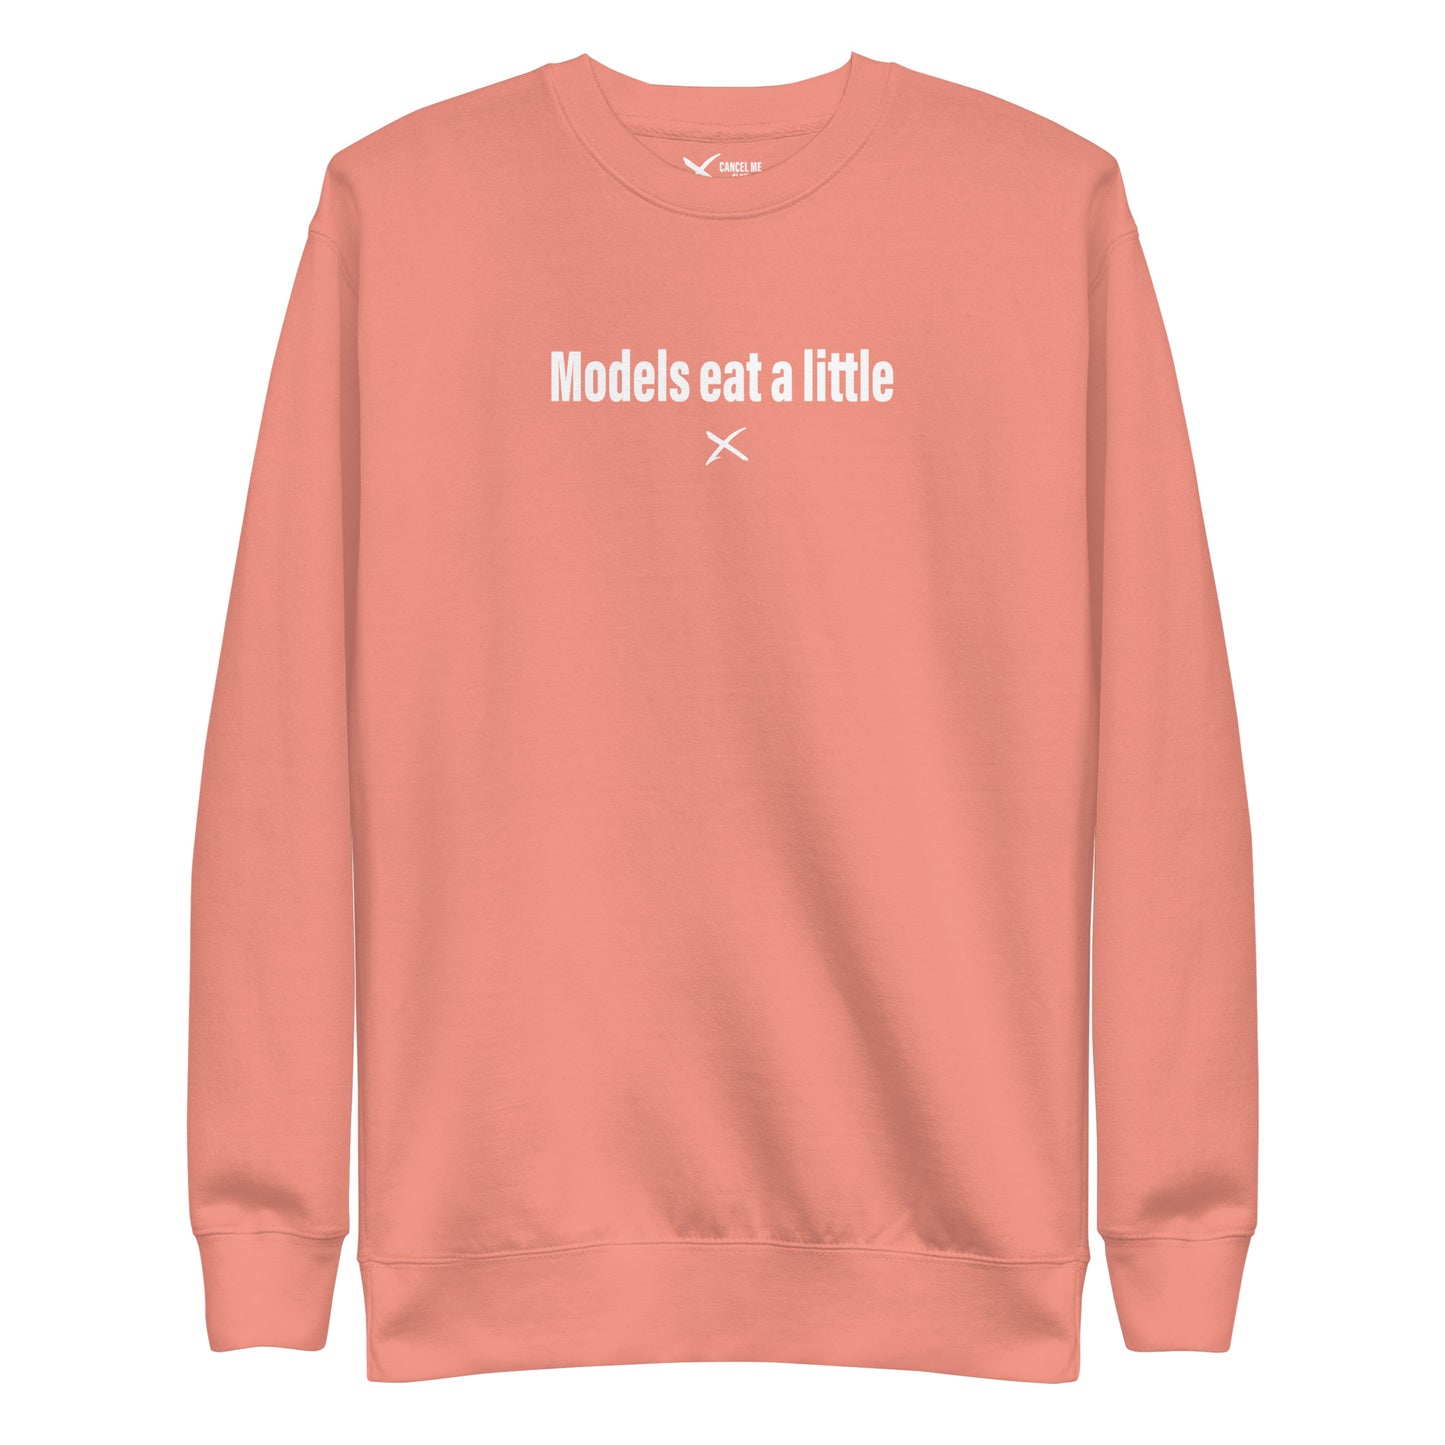 Models eat a little - Sweatshirt